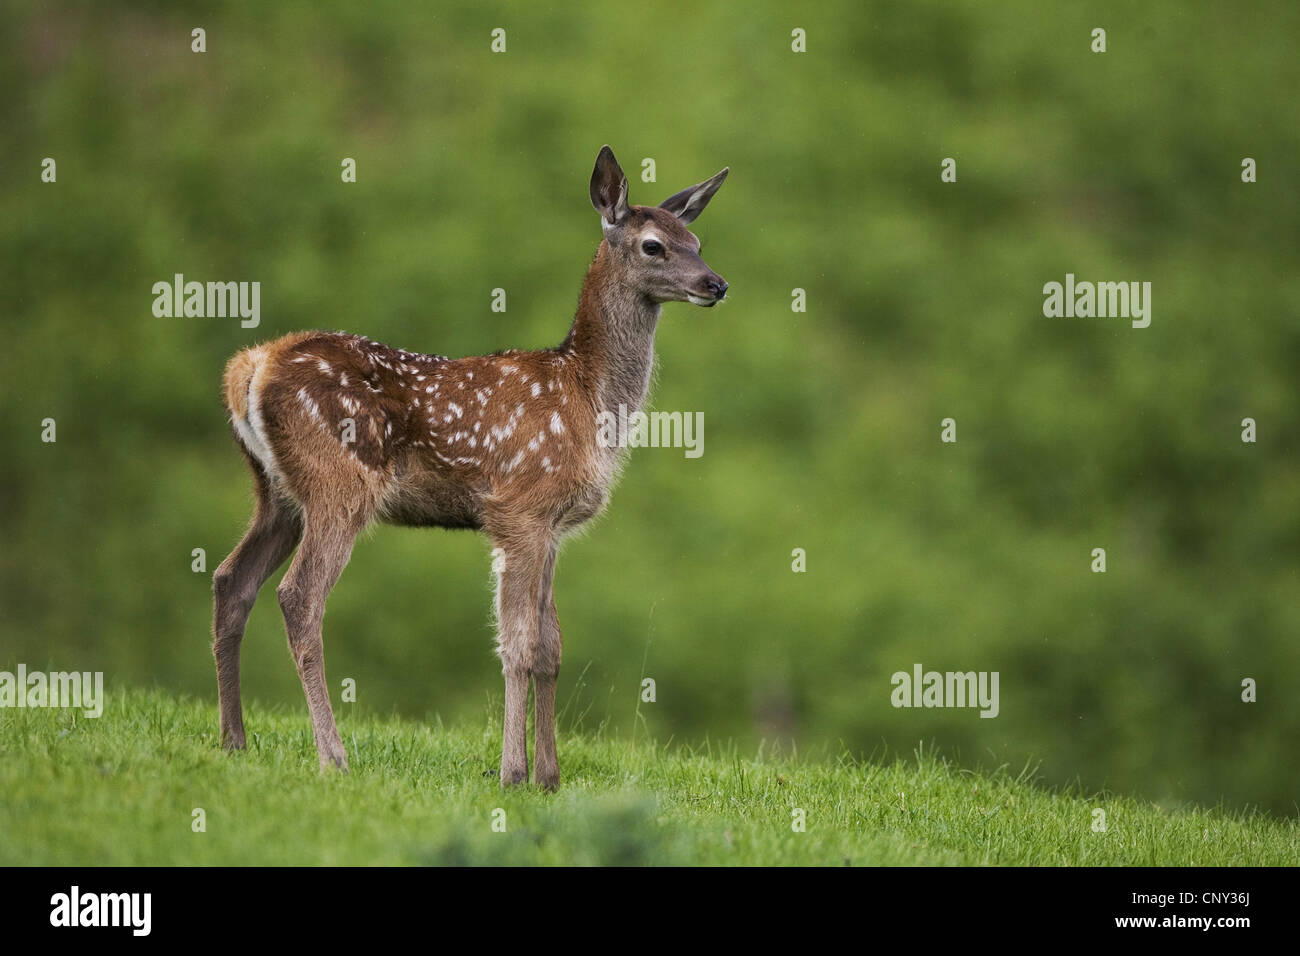 red deer (Cervus elaphus), Red deer fawn in field, United Kingdom, Scotland Stock Photo